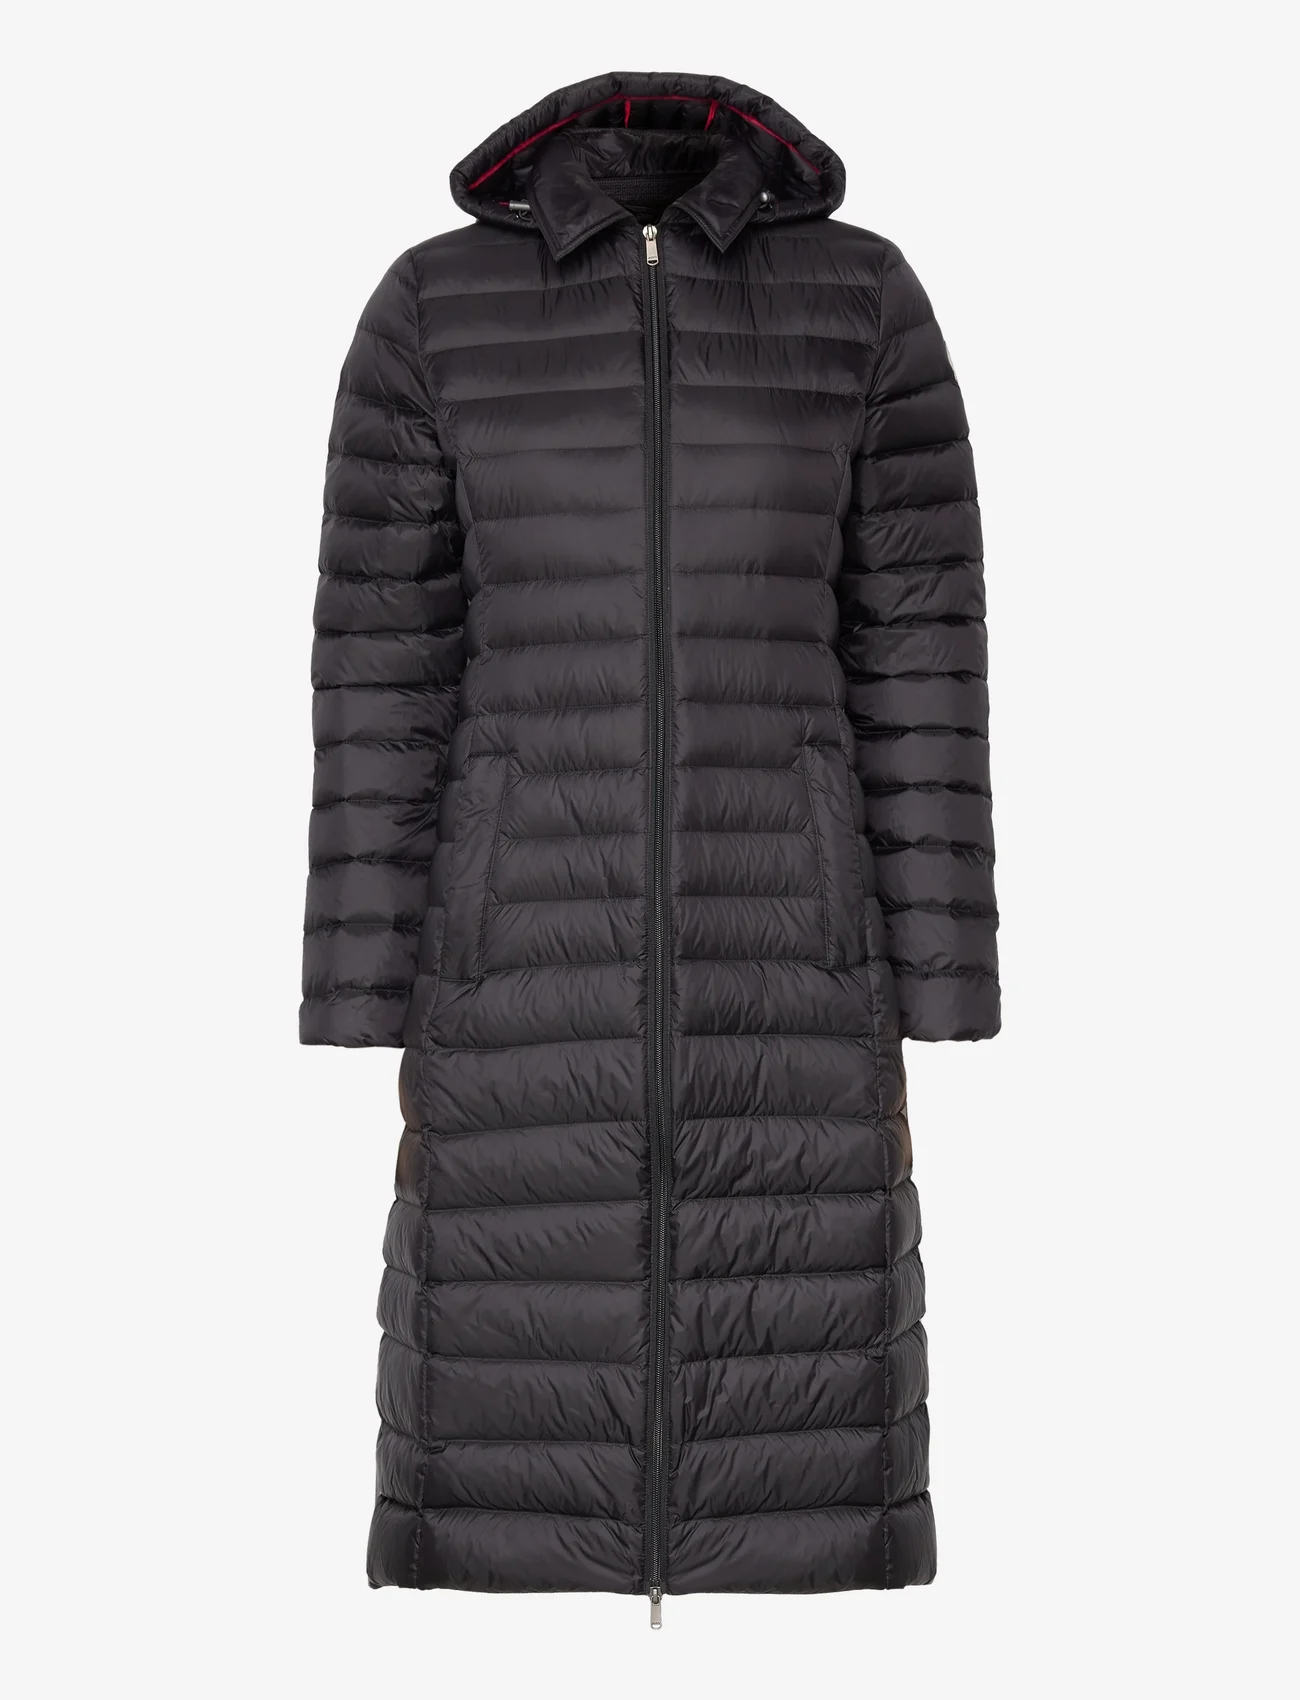 JOTT - LAURIE 2.0 - winter jackets - black - 0